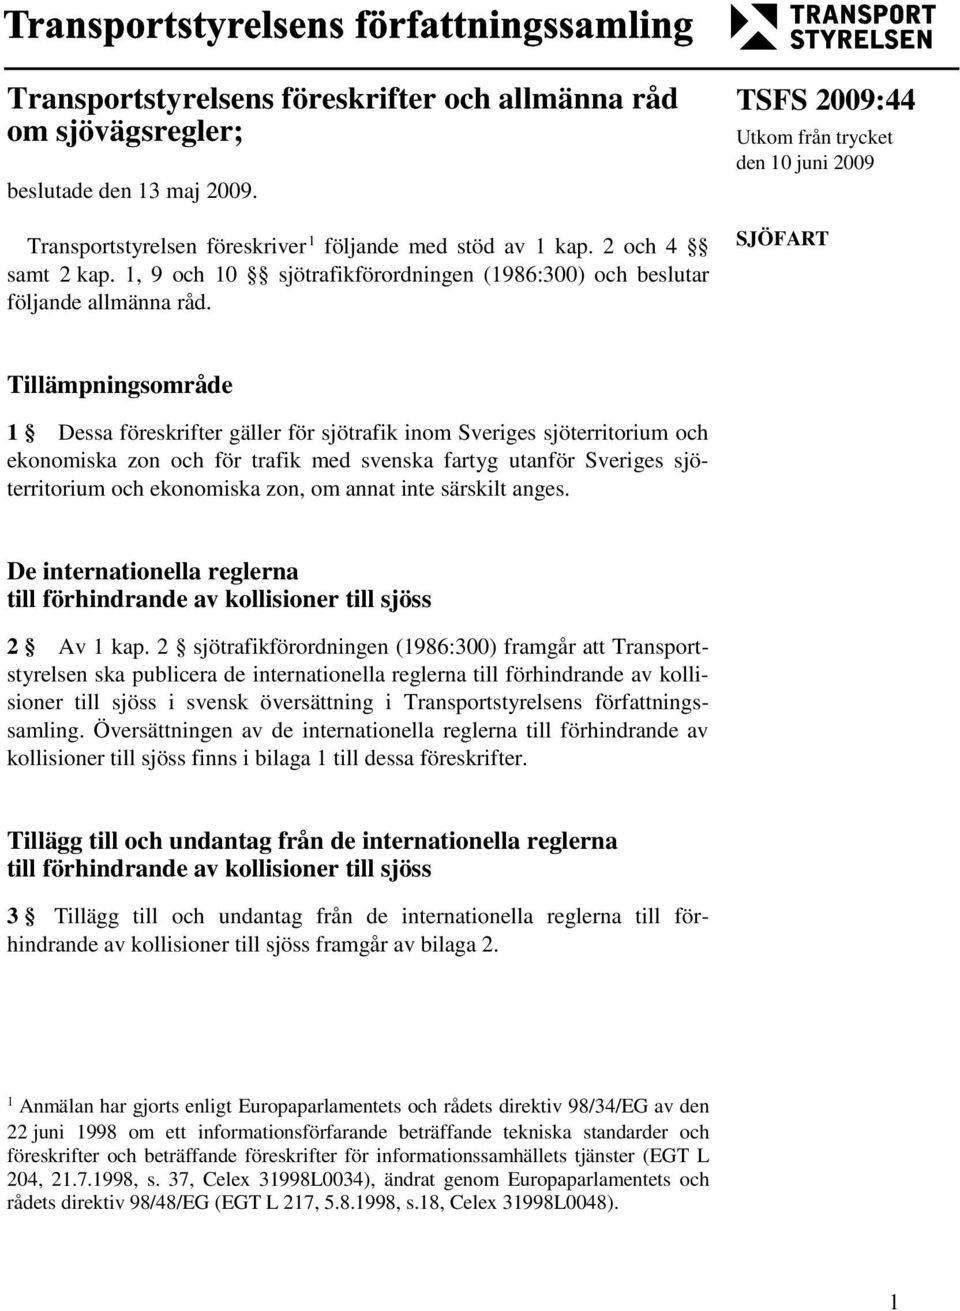 TSFS 2009:44 Utkom från trycket den 10 juni 2009 SJÖFART Tillämpningsområde 1 Dessa föreskrifter gäller för sjötrafik inom Sveriges sjöterritorium och ekonomiska zon och för trafik med svenska fartyg